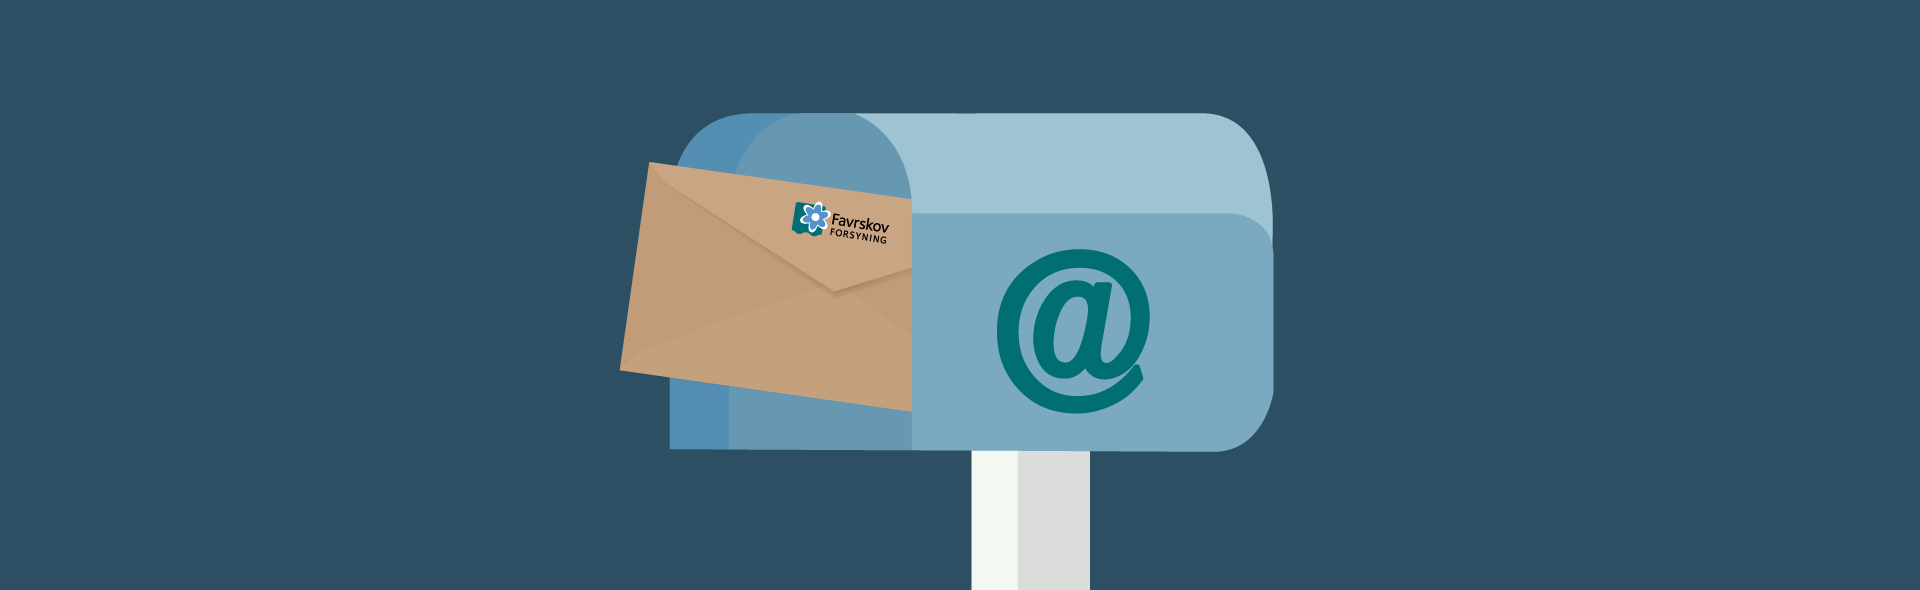 Grafisk tegning af brevmed logo i postkasse